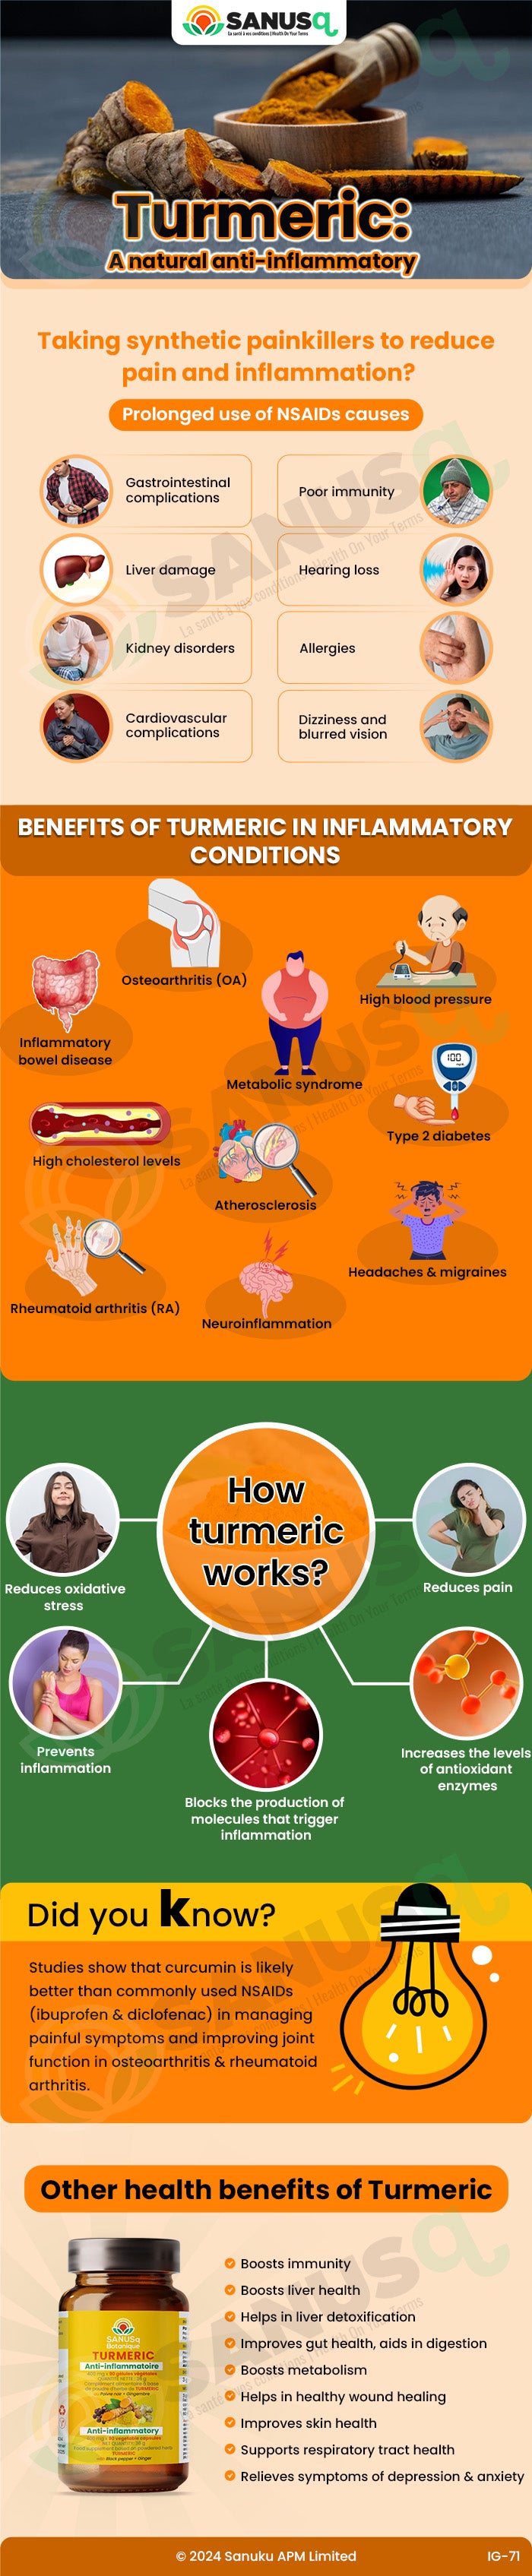 turmeric as anti-inflammatory